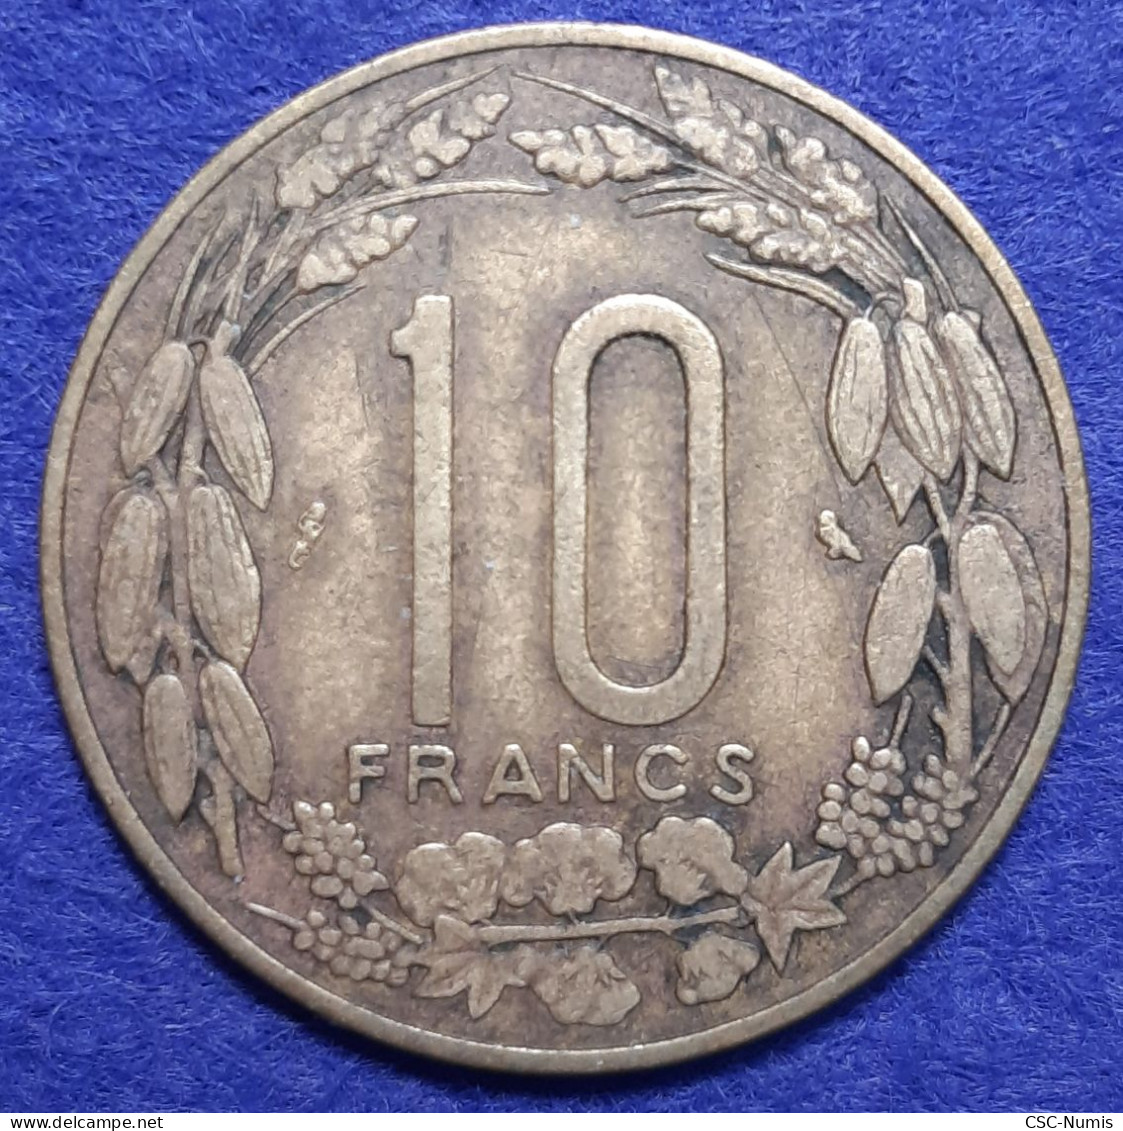 (CG#102) - Cameroun - 10 Francs 1961 - Cameroon